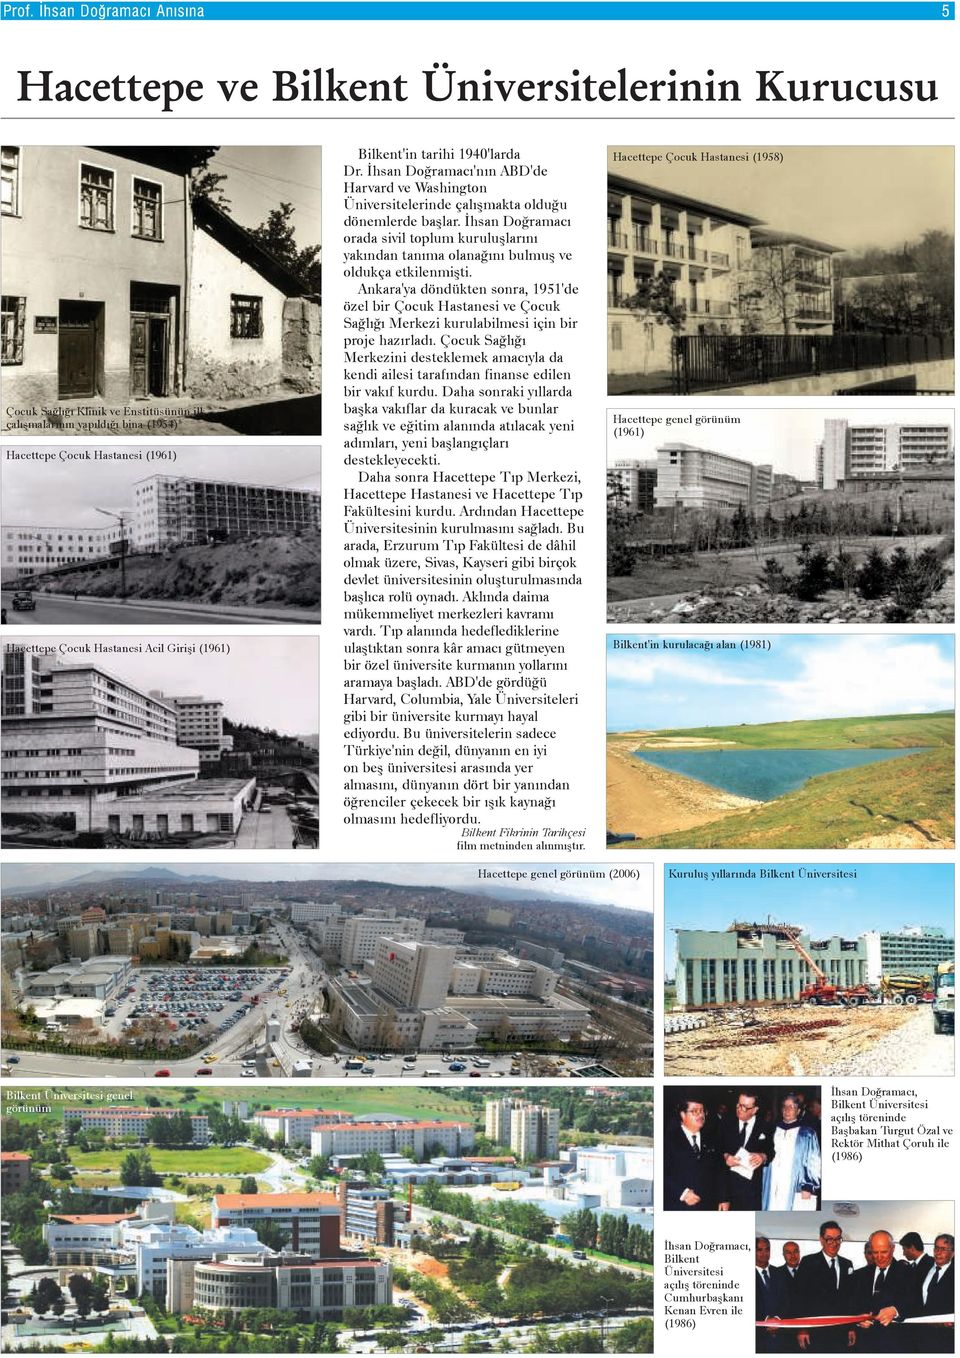 Ankara'ya döndükten sonra, 1951'de özel bir Çocuk Hastanesi ve Çocuk Saðlýðý Merkezi kurulabilmesi için bir proje hazýrladý.